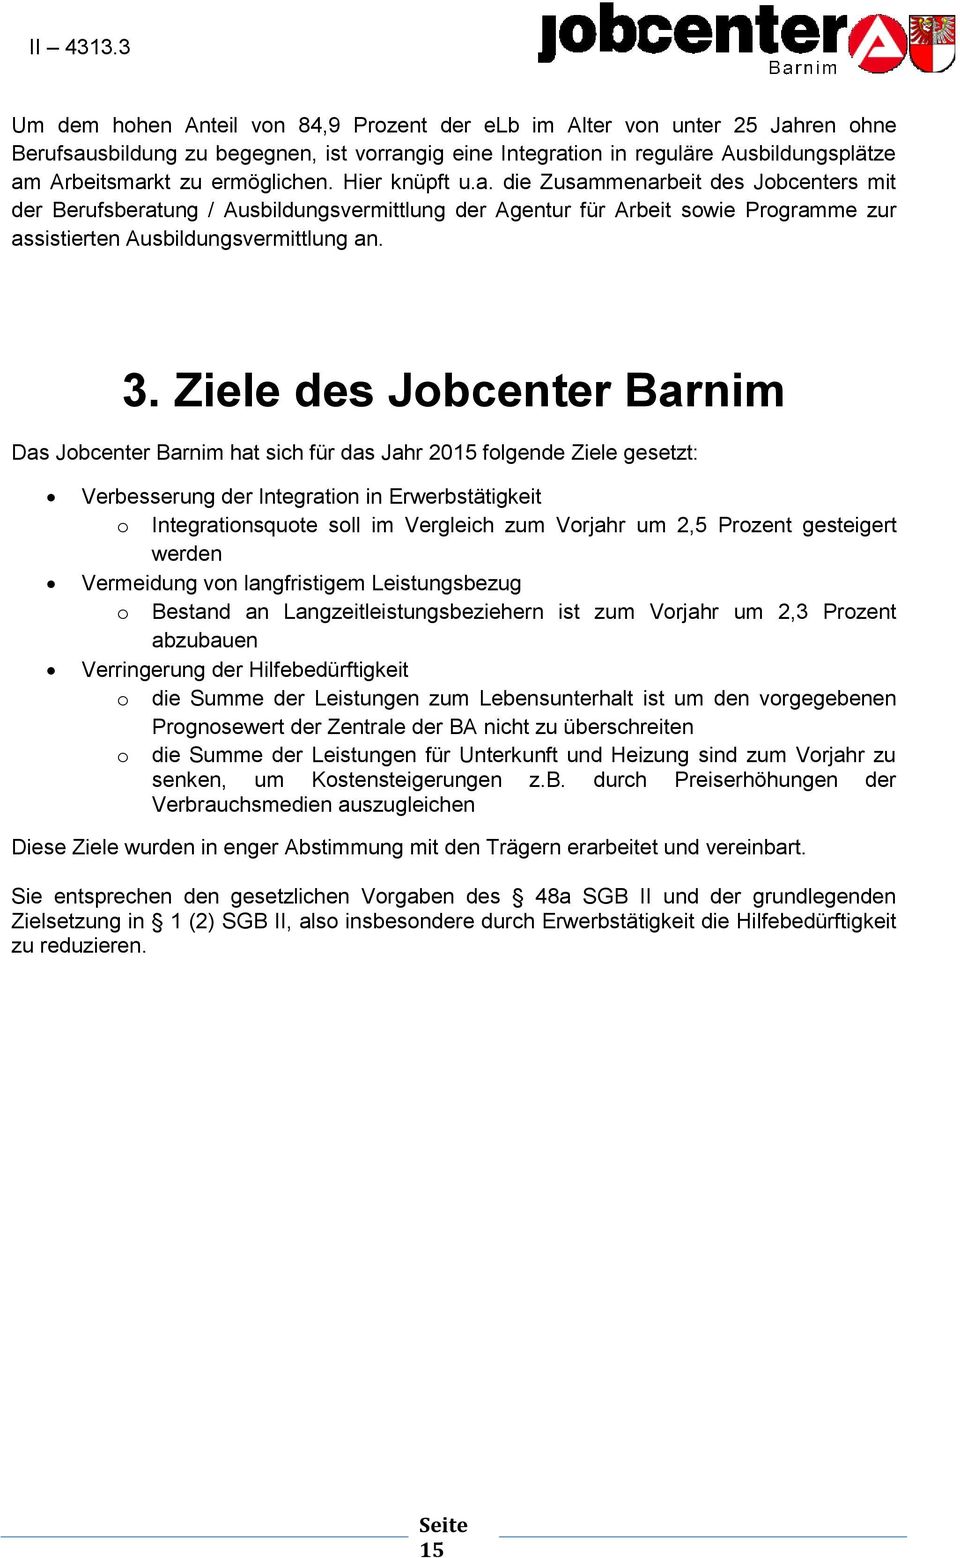 Ziele des Jobcenter Barnim Das Jobcenter Barnim hat sich für das Jahr 2015 folgende Ziele gesetzt: Verbesserung der Integration in Erwerbstätigkeit o Integrationsquote soll im Vergleich zum Vorjahr